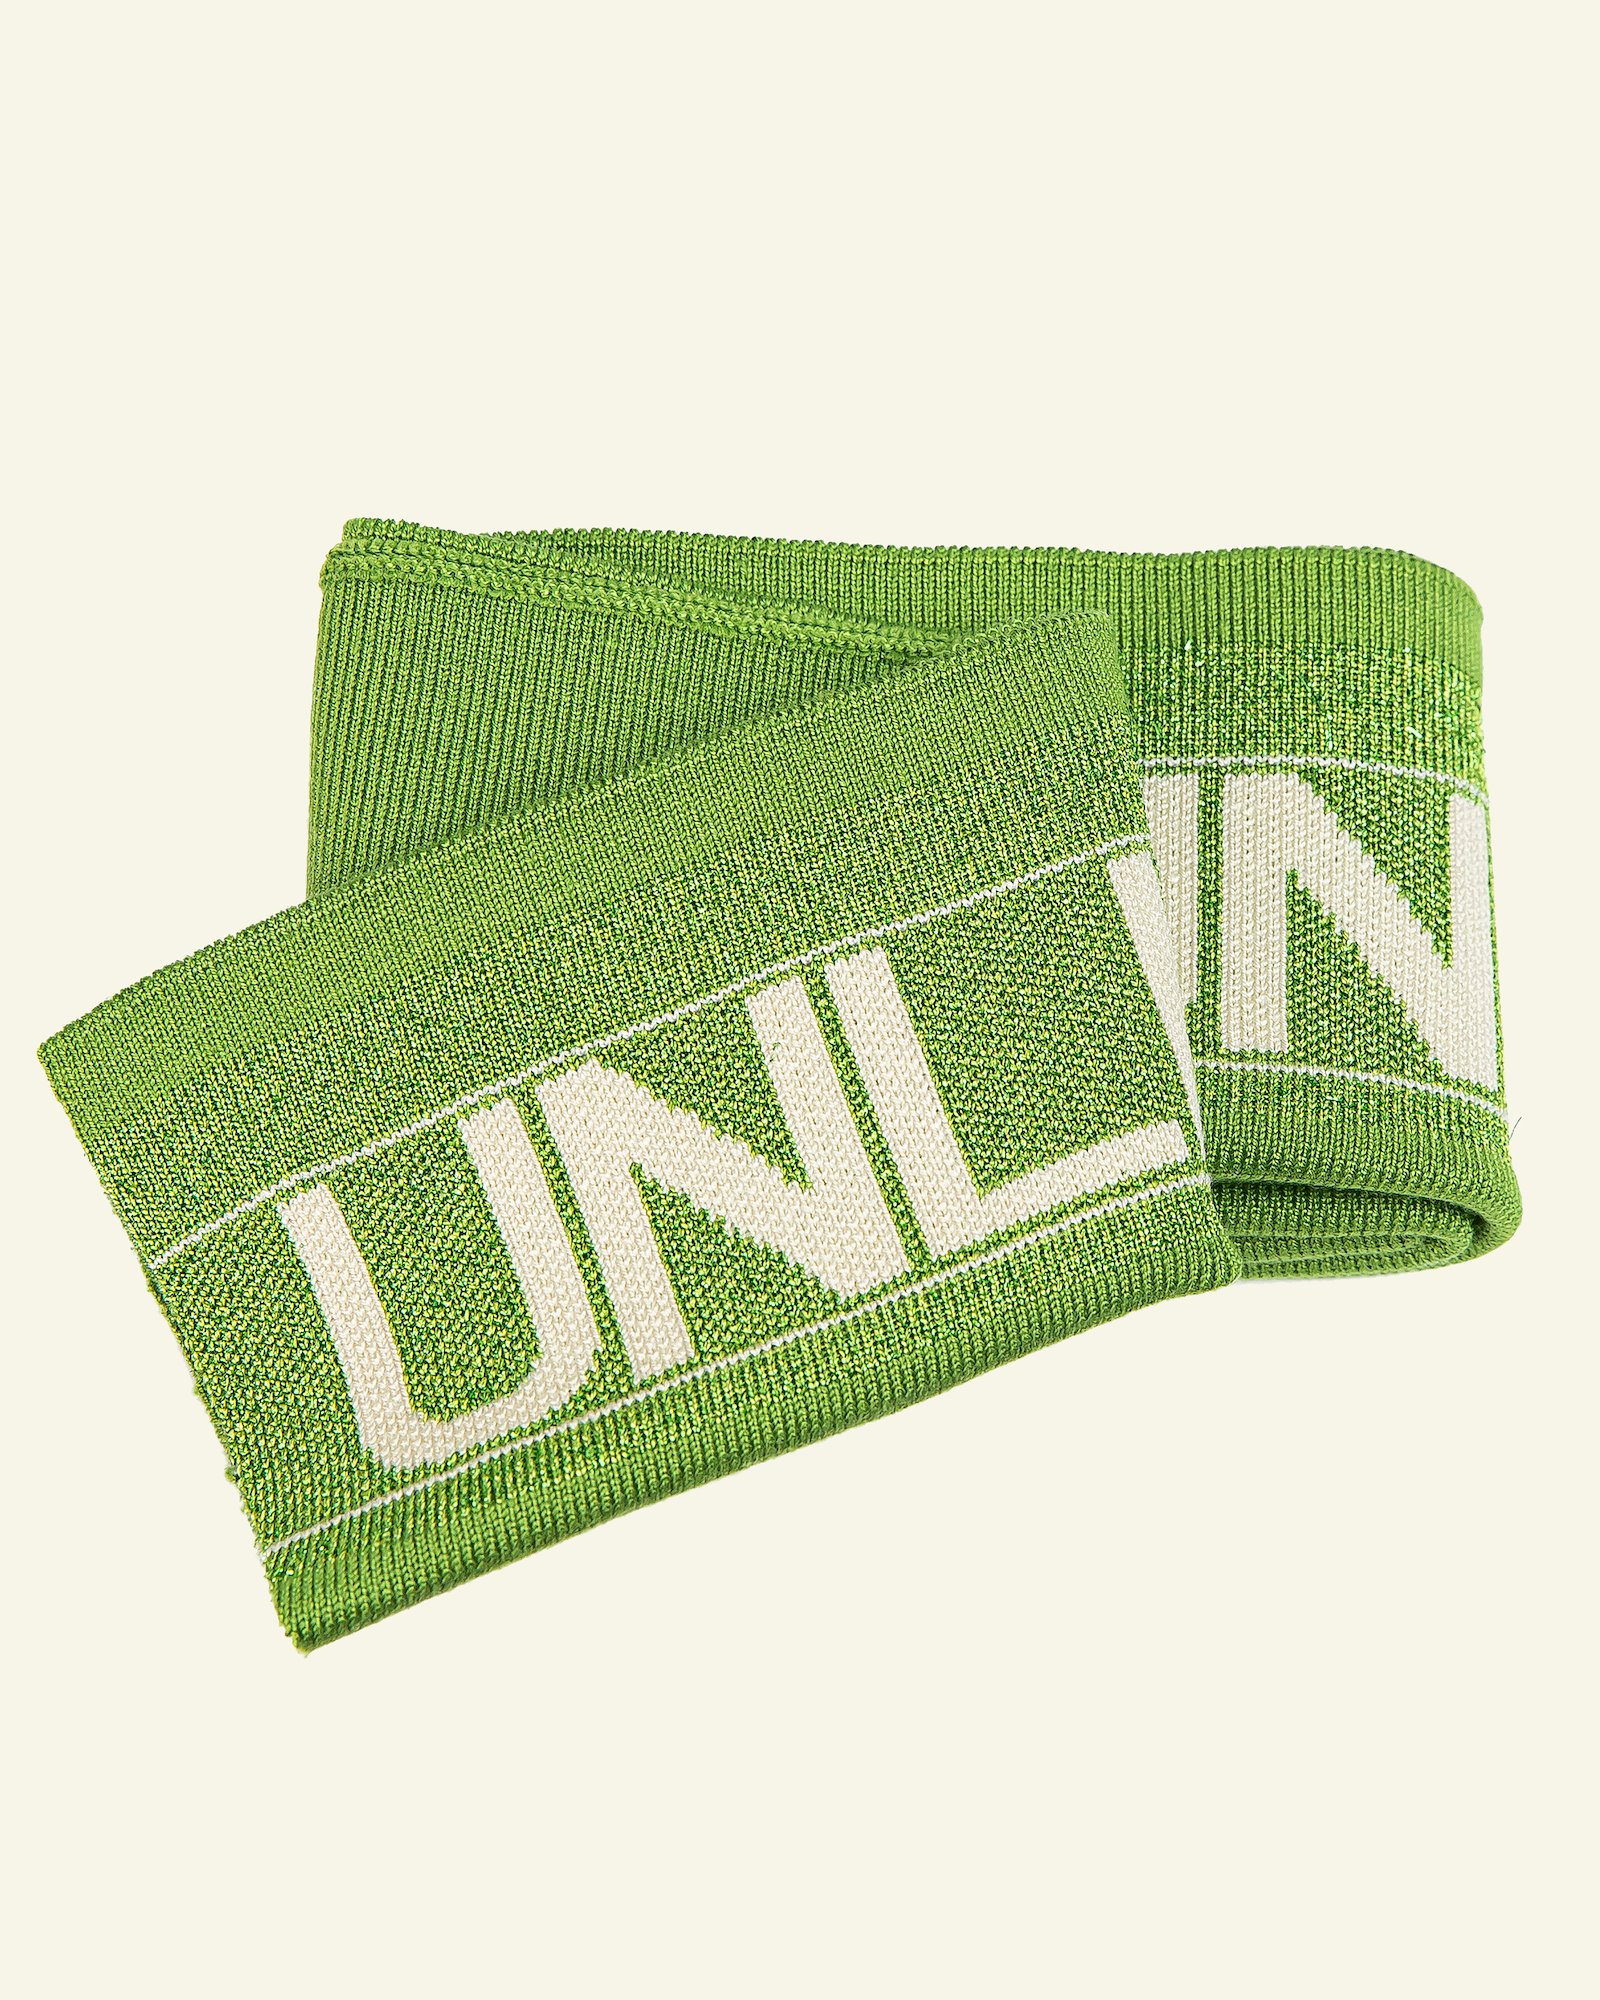 1x1 rib fold 13,5x100cm grøn lurex 1pc, "UNLIMITED" 96185_pack